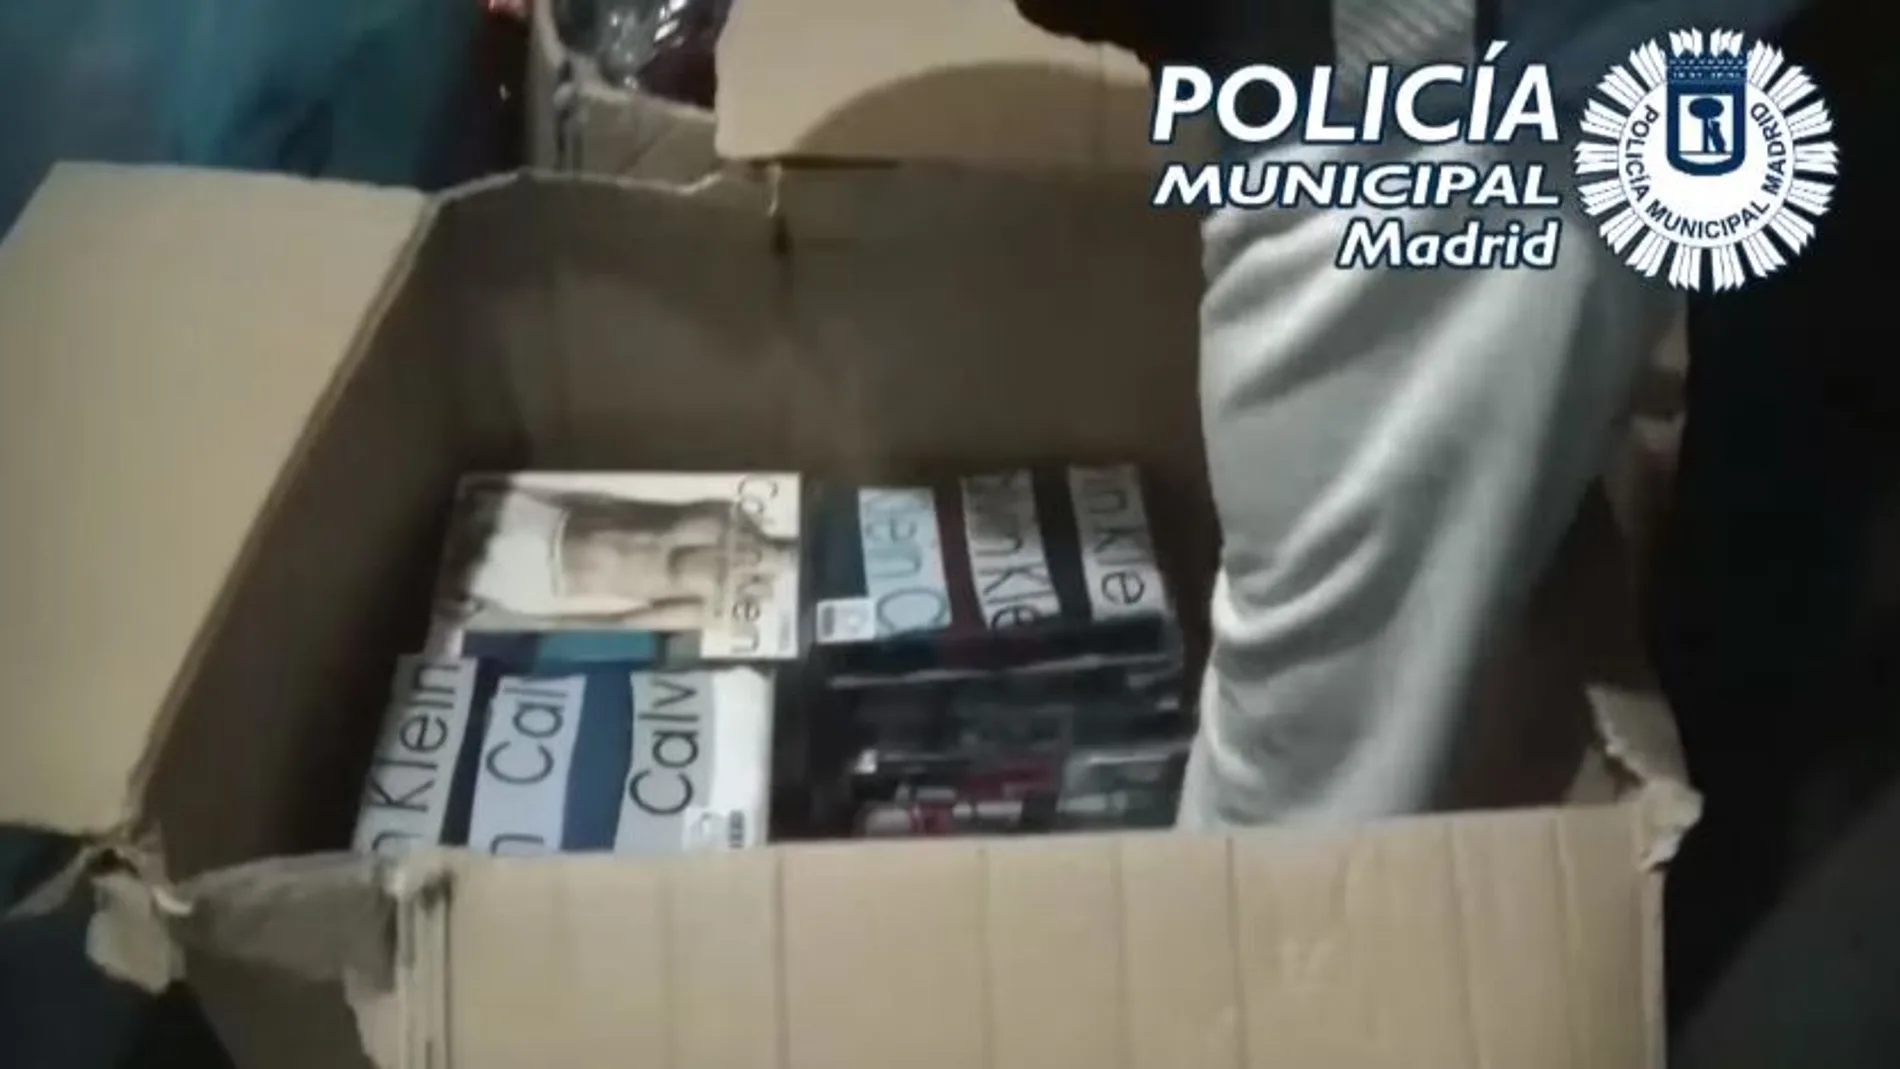 La operación “Arias” de la Policía Municipal de Madrid ha permitido la intervención de 15.000 artículos en el registro de dos domicilios y una persona detenida.